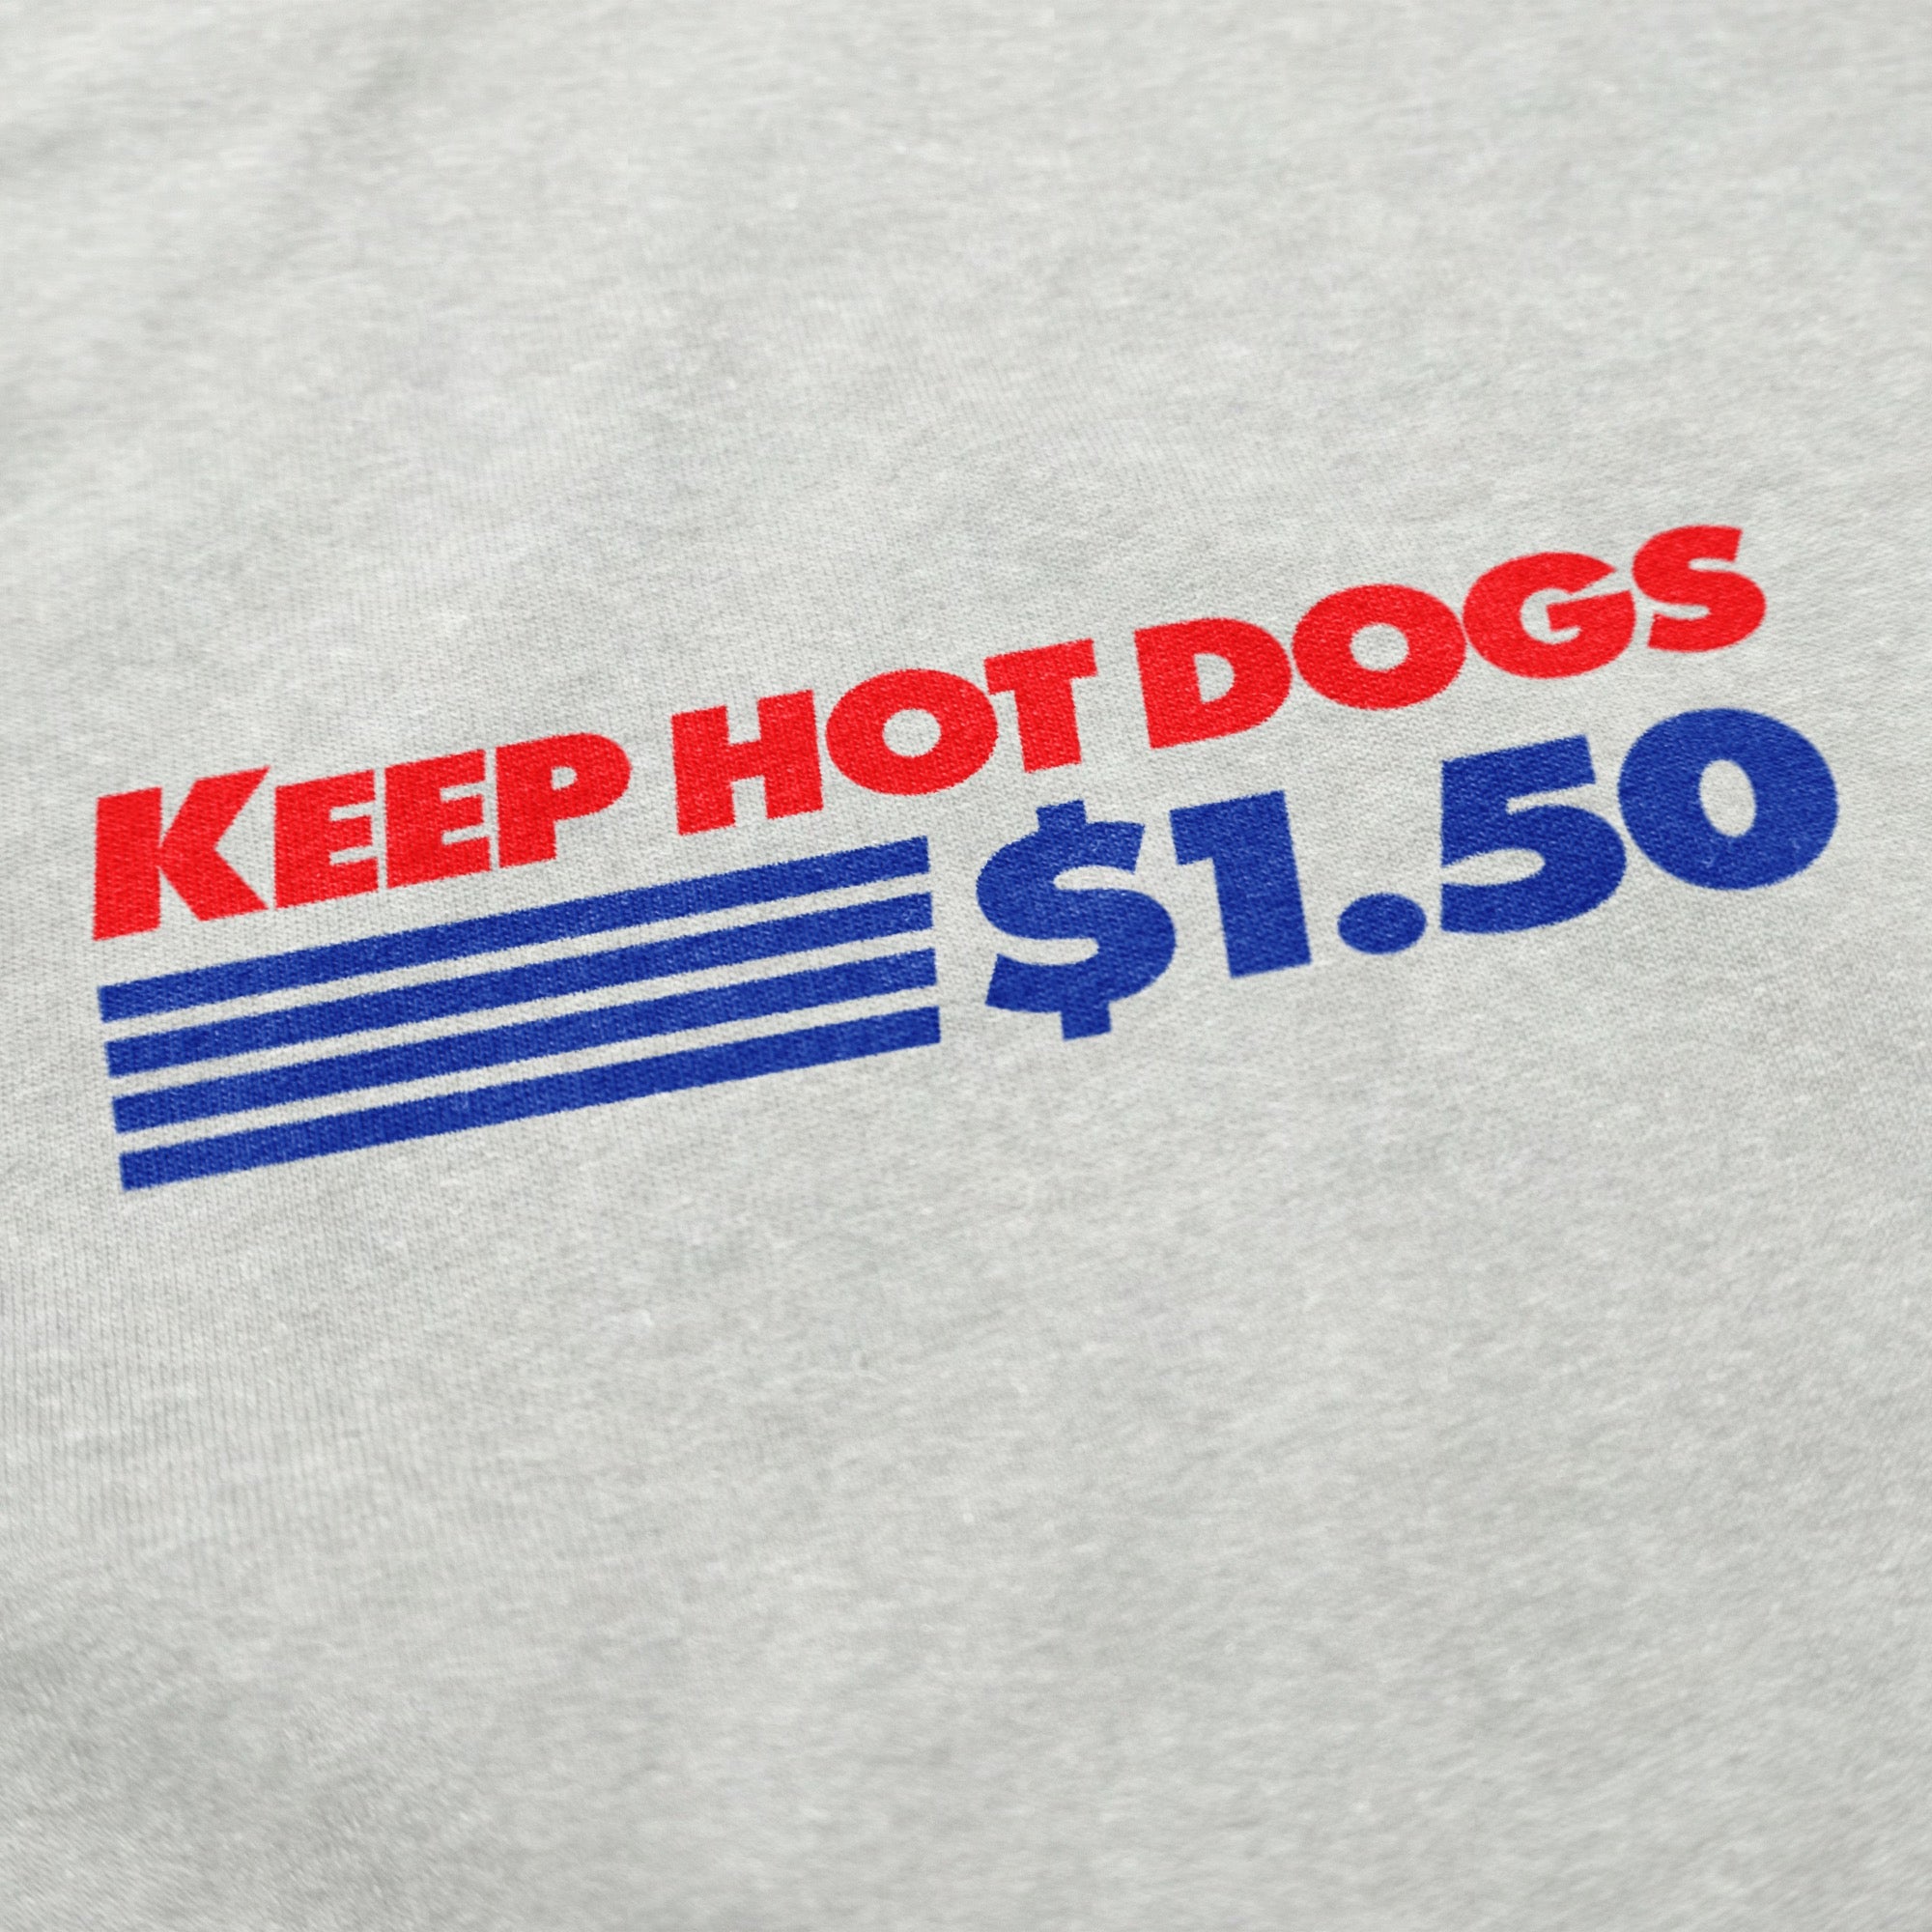 Keep Hot Dogs $1.50 Crewneck Sweatshirt